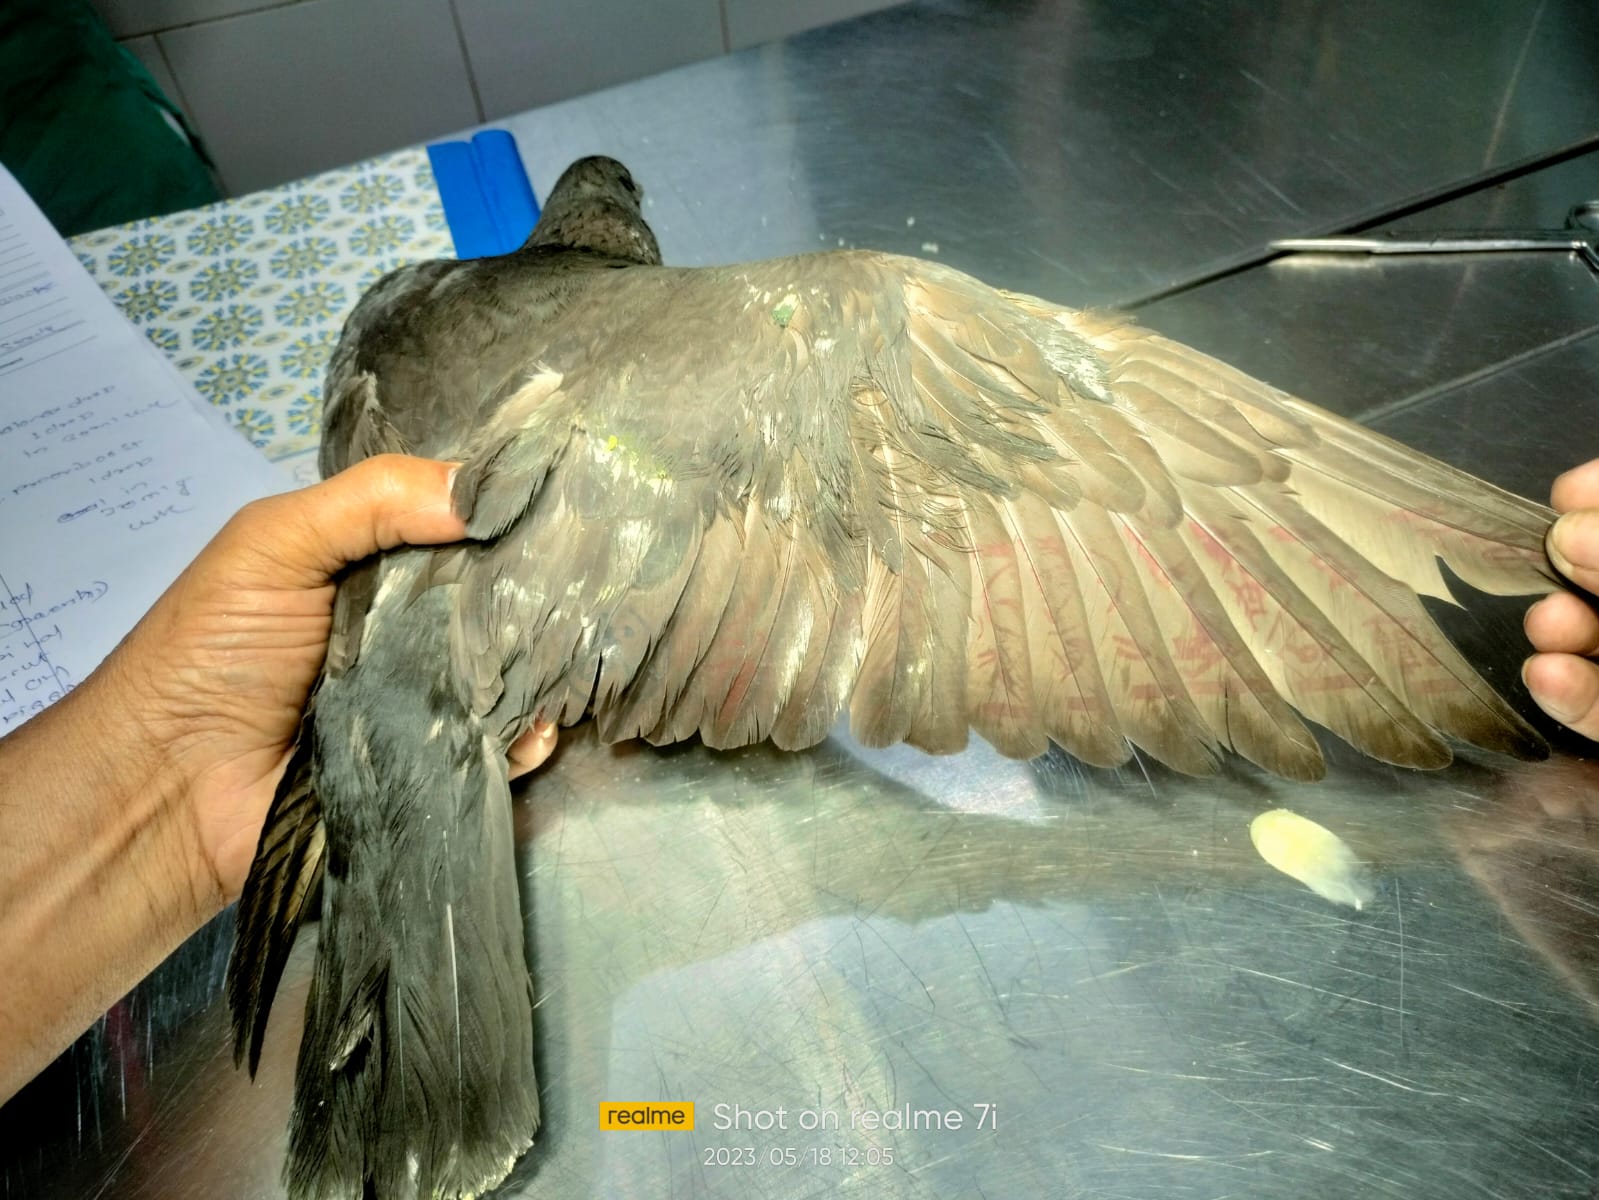 Die Taube sei mit Schriftzeichen auf den Flügeln gefunden worden, sagte PETA.